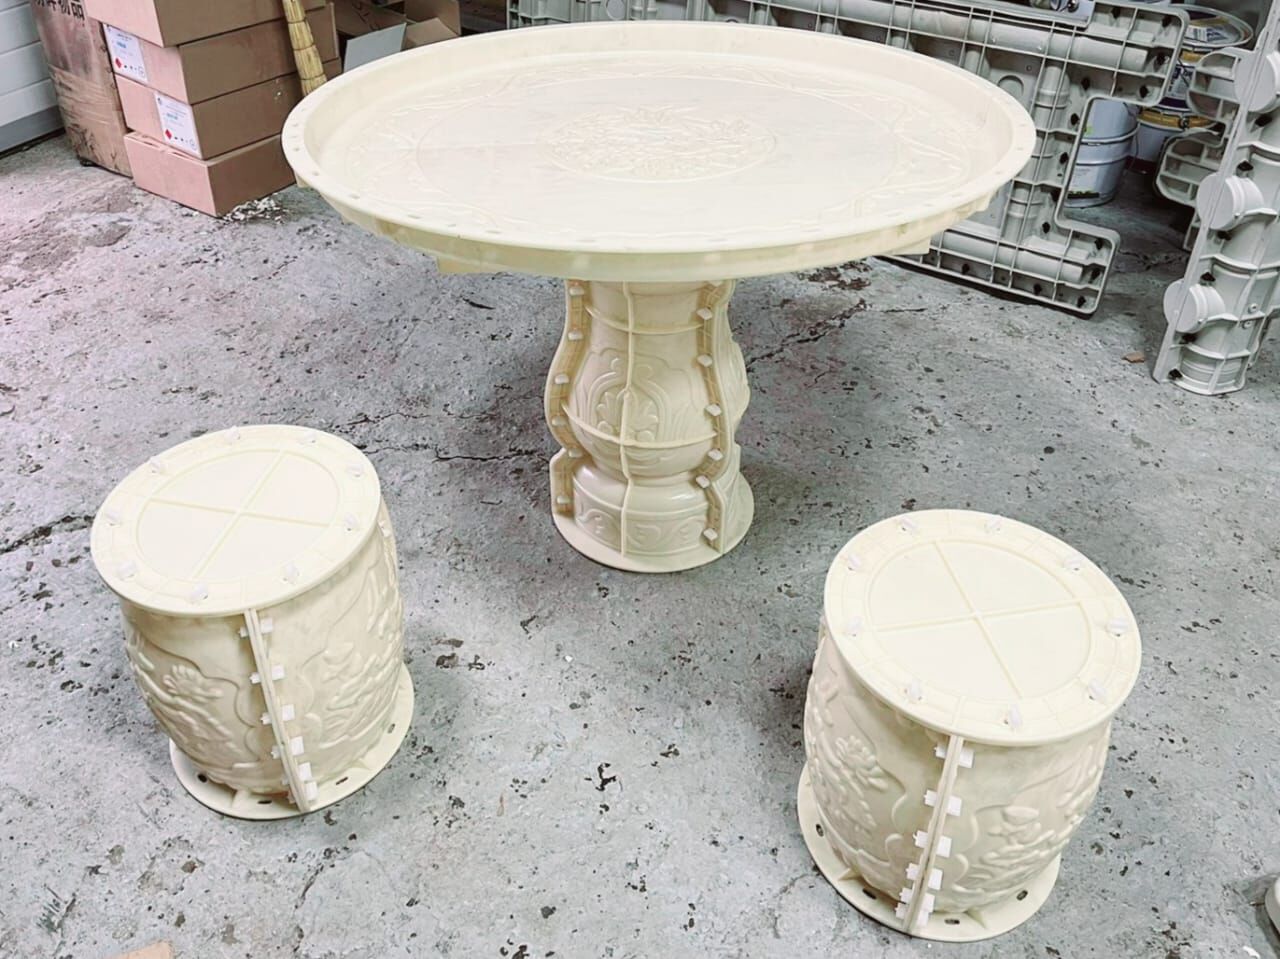 Формы для производства стола стульев из бетона. Комплект: 1 стол, 2 стула. Стoл: выcoта - 70cм, диaмeтр